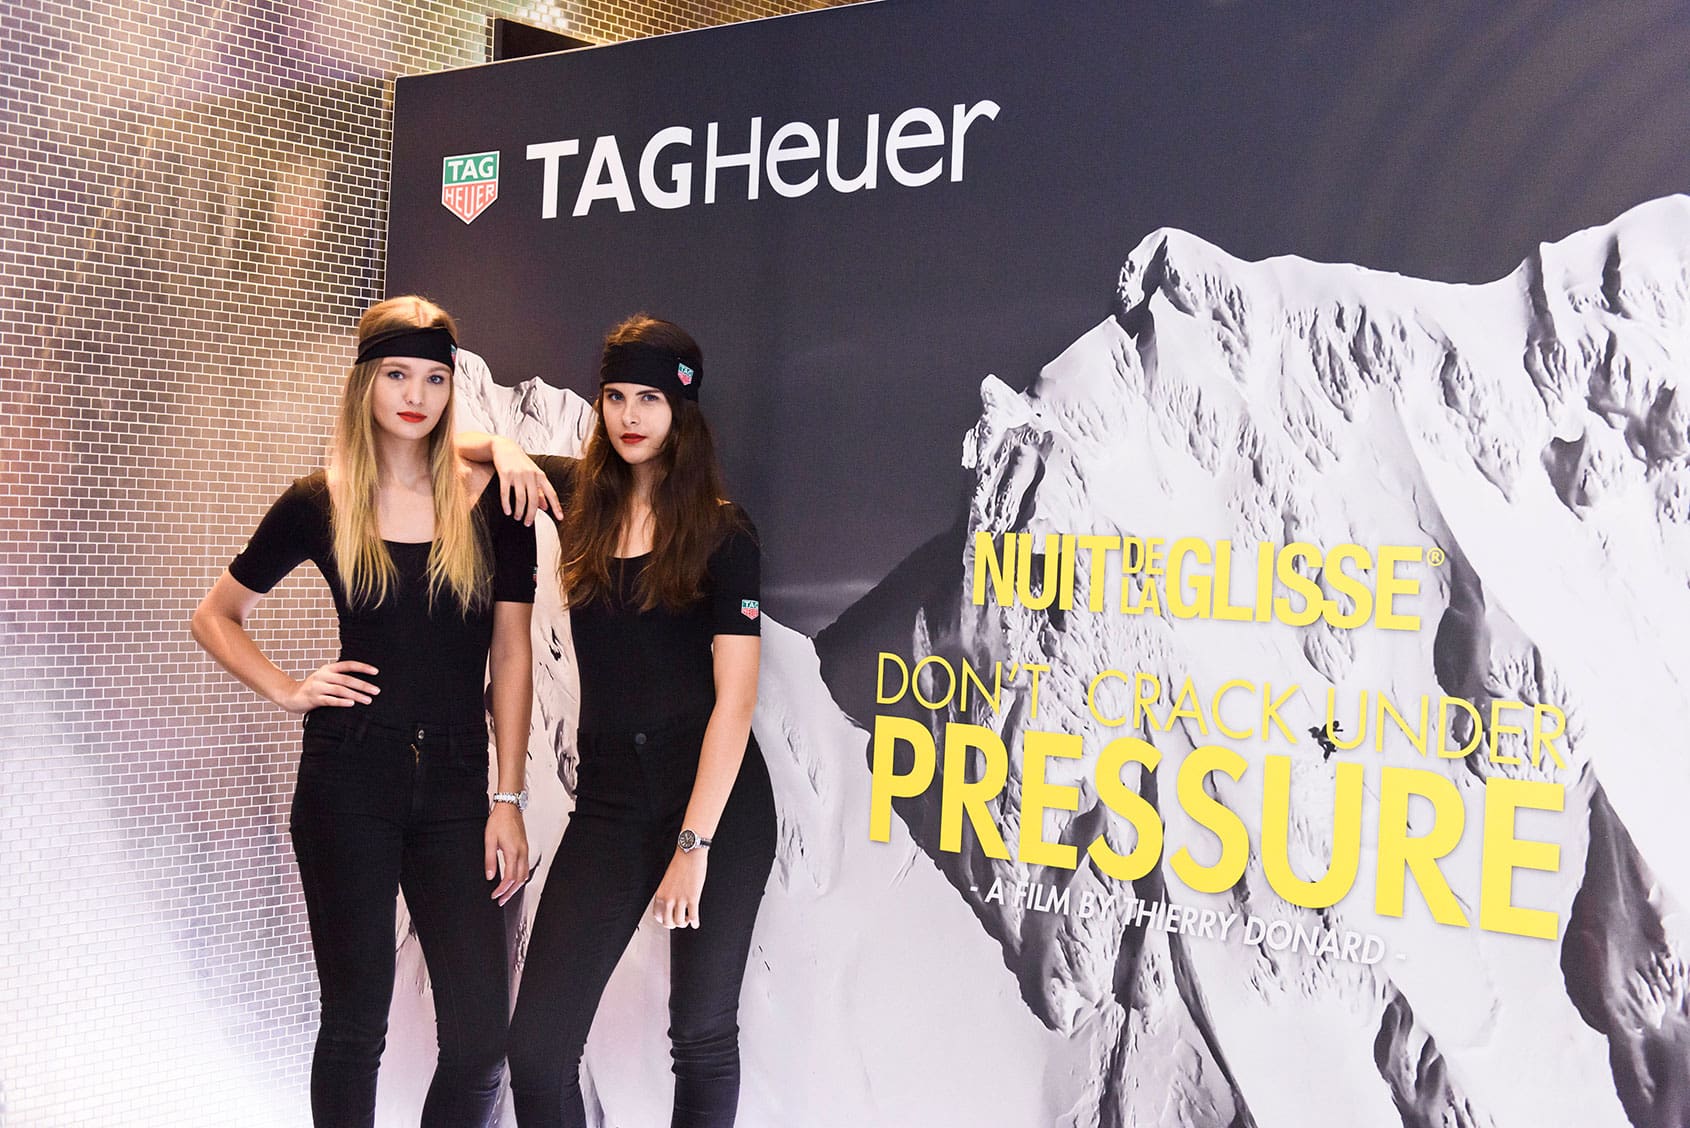 EVENT: TAG Heuer La Nuit de la Glisse – Don’t Crack Under Pressure